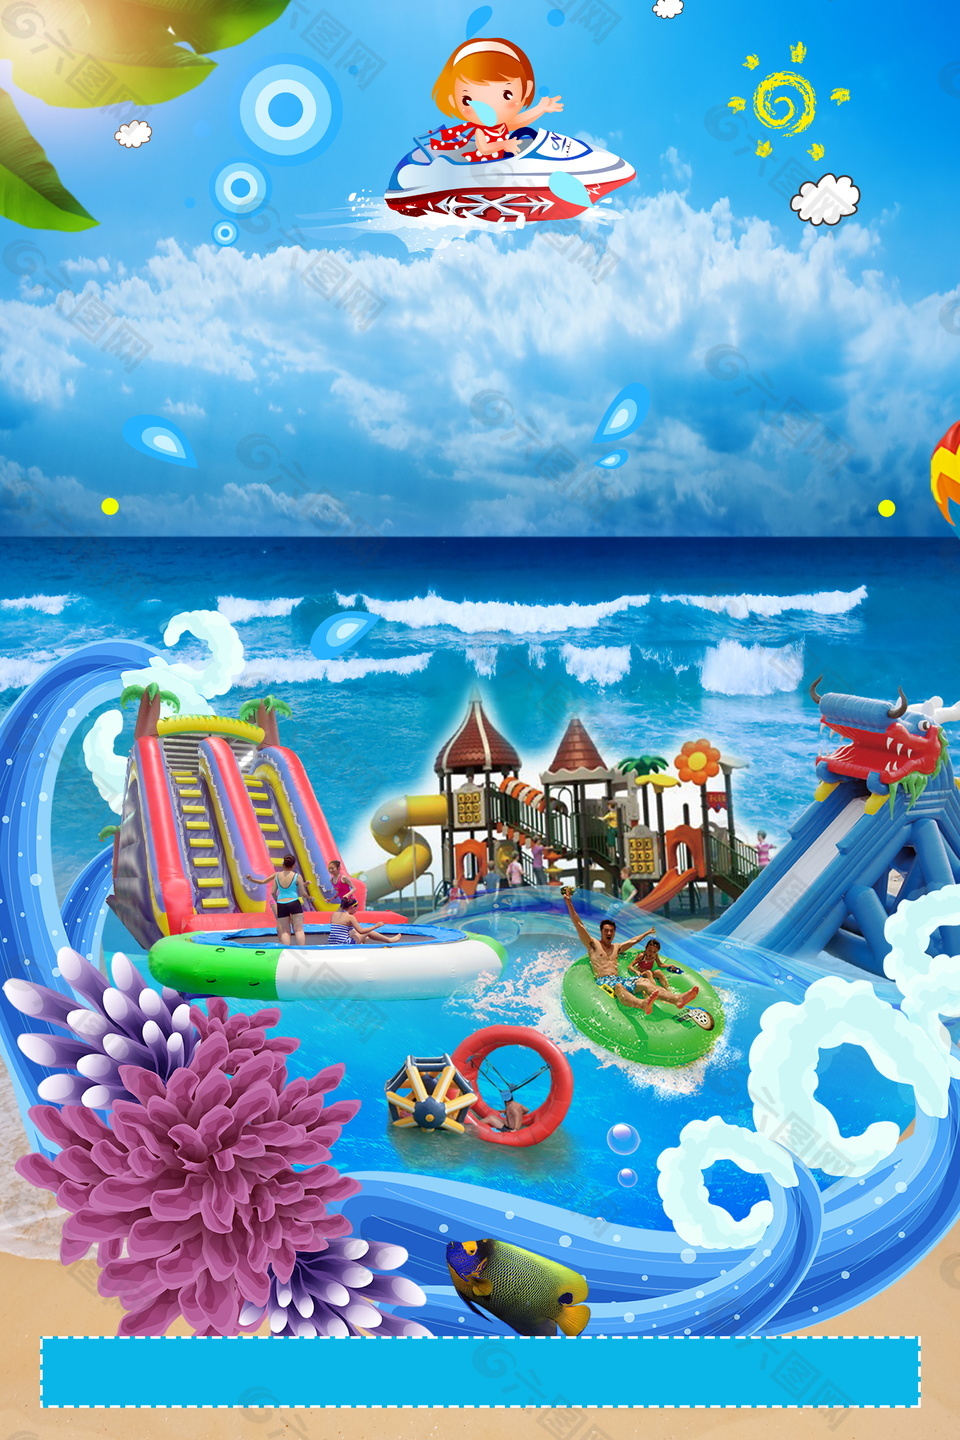 彩绘卡通水上世界水上乐园背景素材